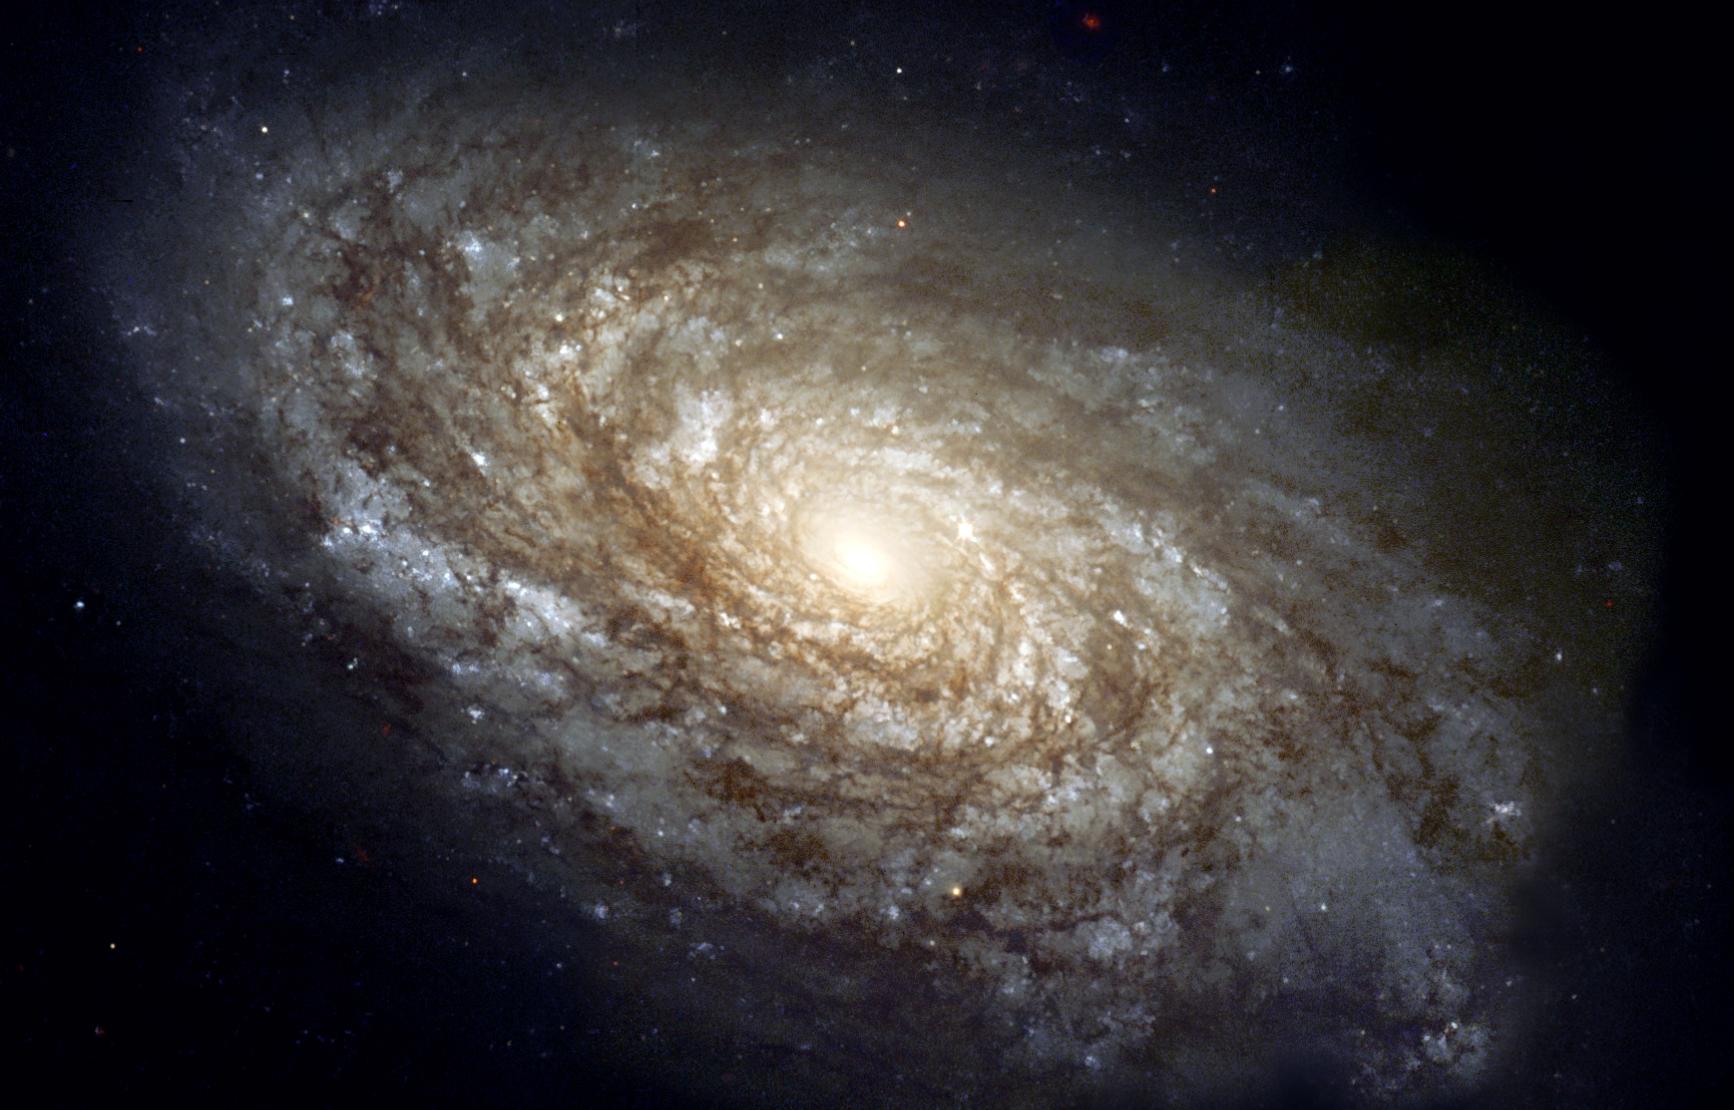 Telescope photo of the Andromeda Galaxy, provided by NASA.